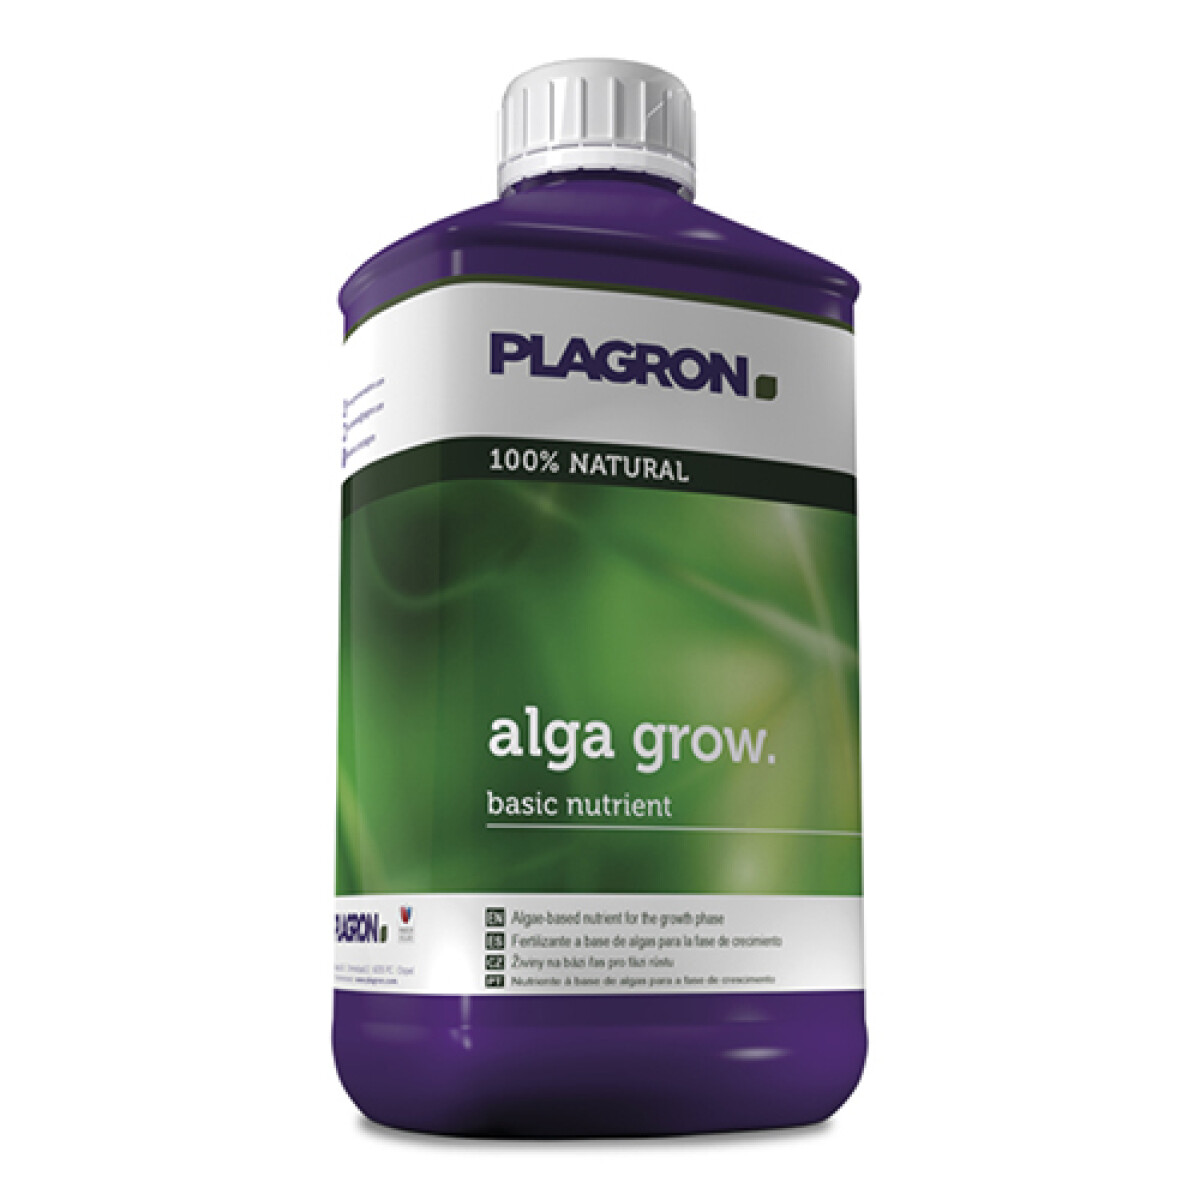 ALGA GROW PLAGRON - 500ML 